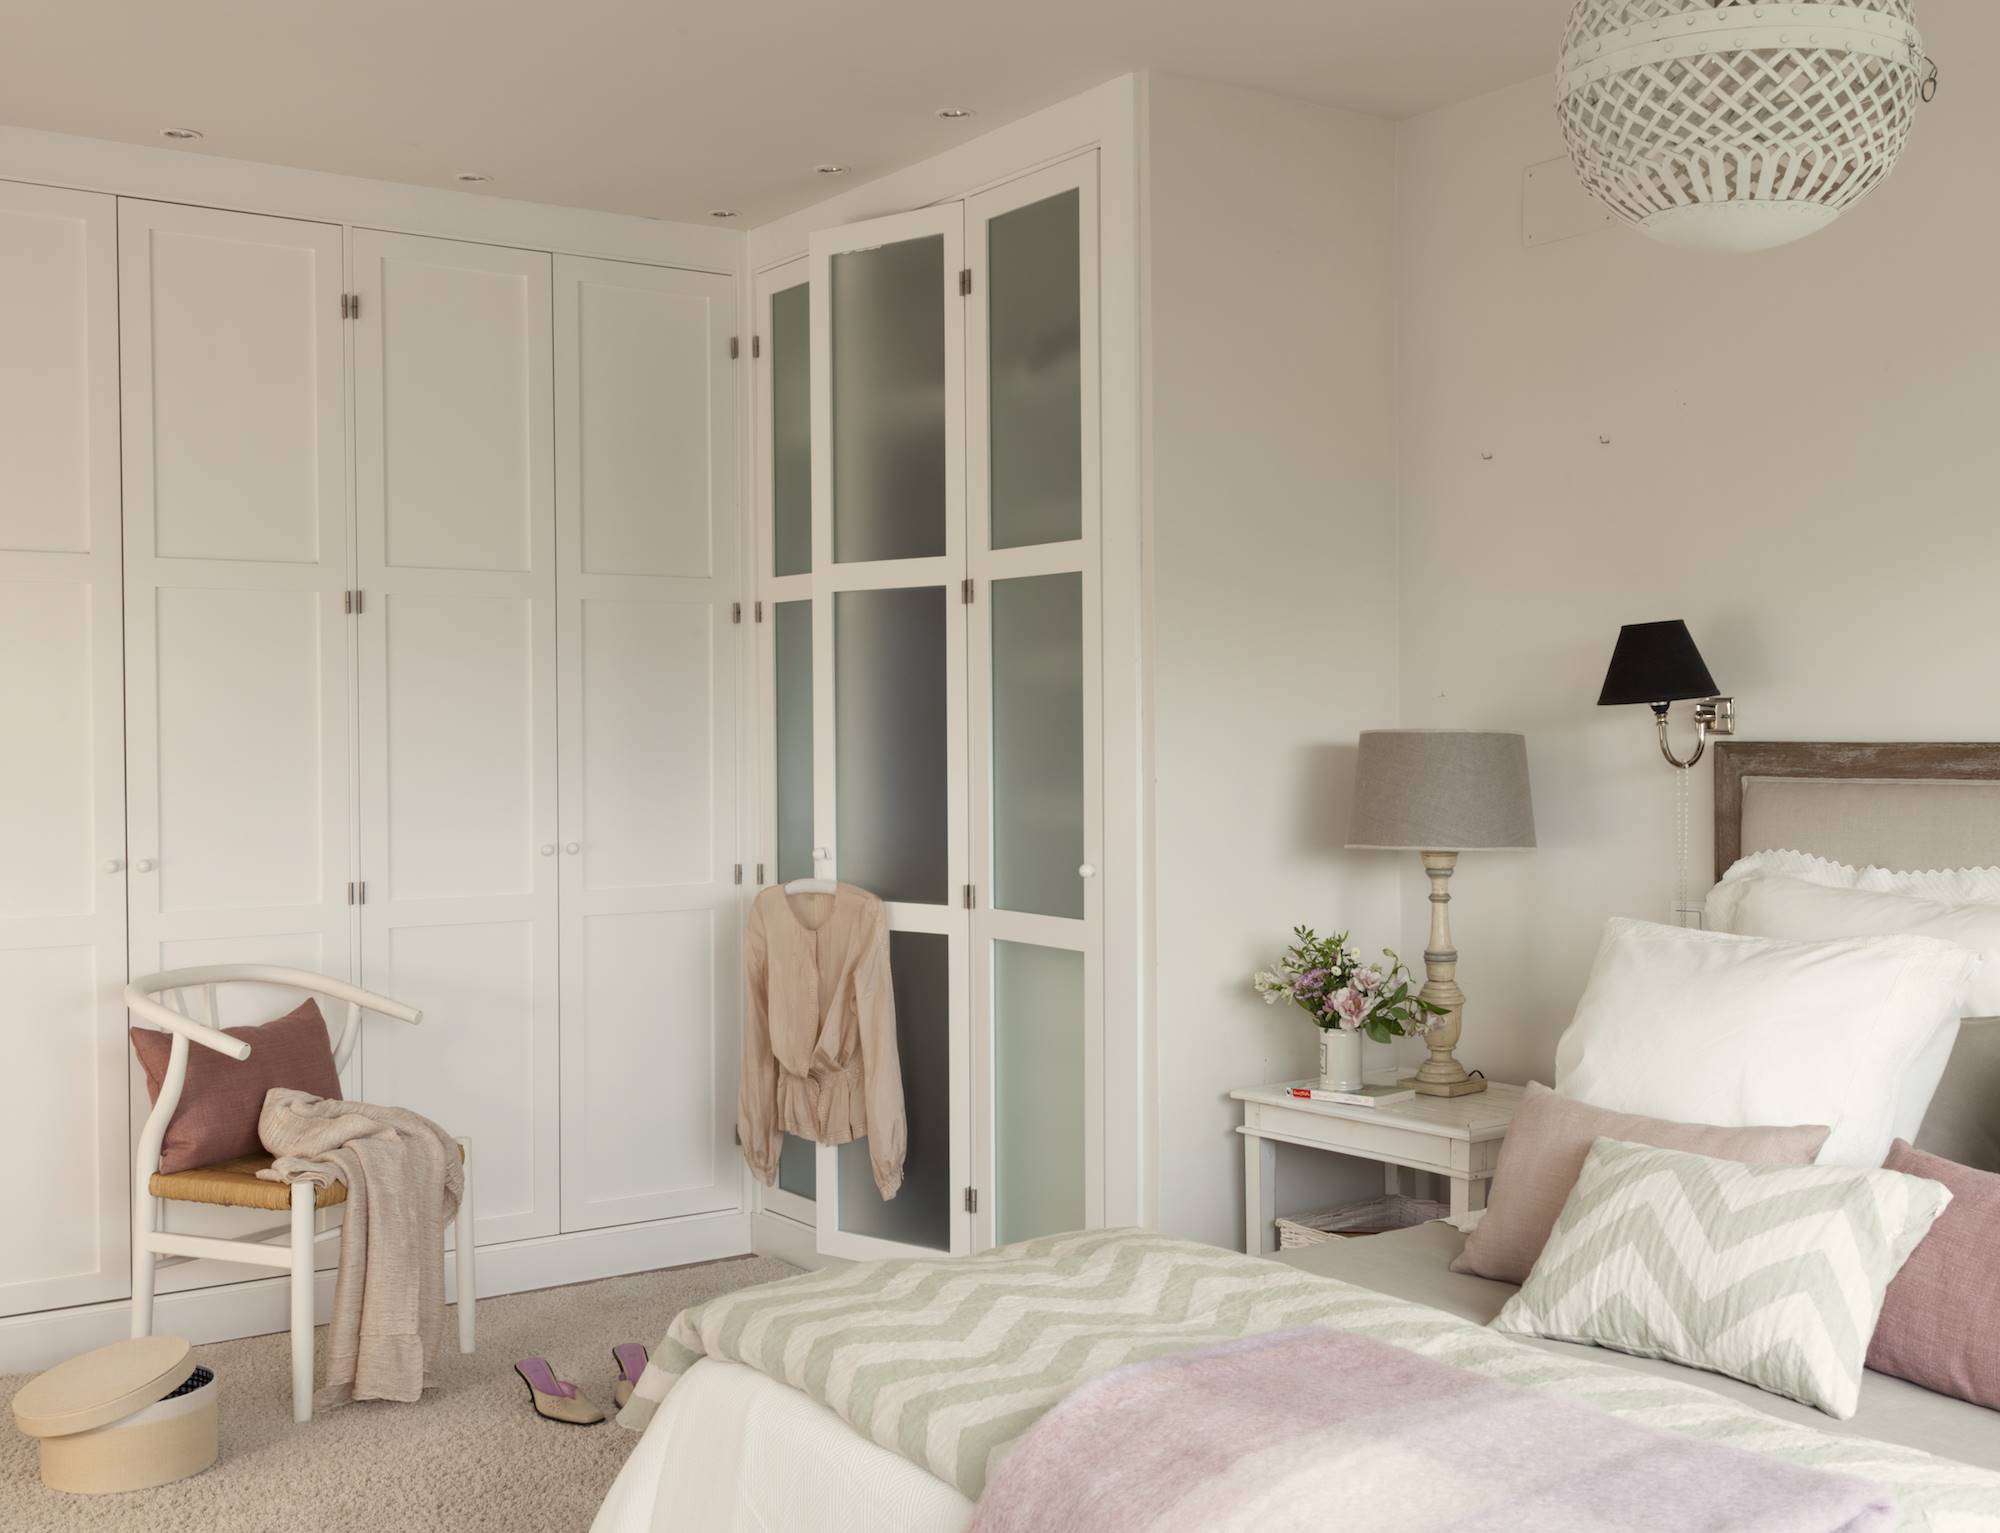 Dormitorio con armarios blancos con frentes ciegos y acristalados